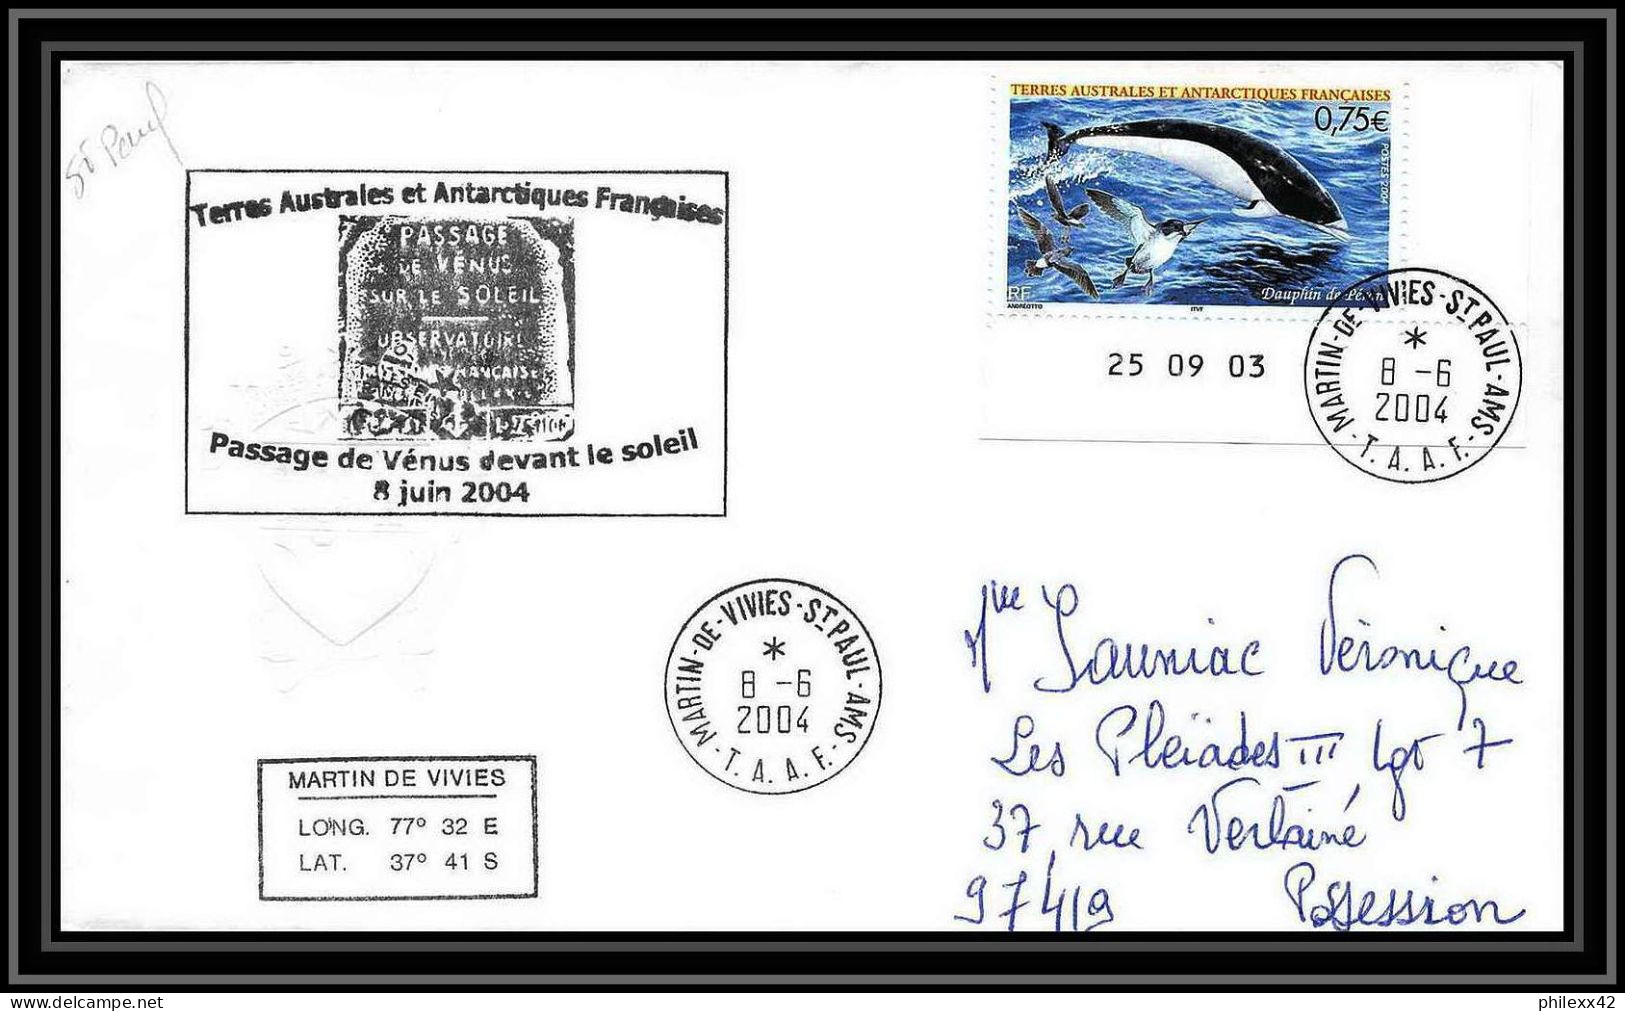 2446 ANTARCTIC Terres Australes TAAF Lettre Dufresne 2 N°395 PASSAGE DE VENUS DEVANT LE SOLEIL 2004 Coin Daté Dauphin - Spedizioni Antartiche